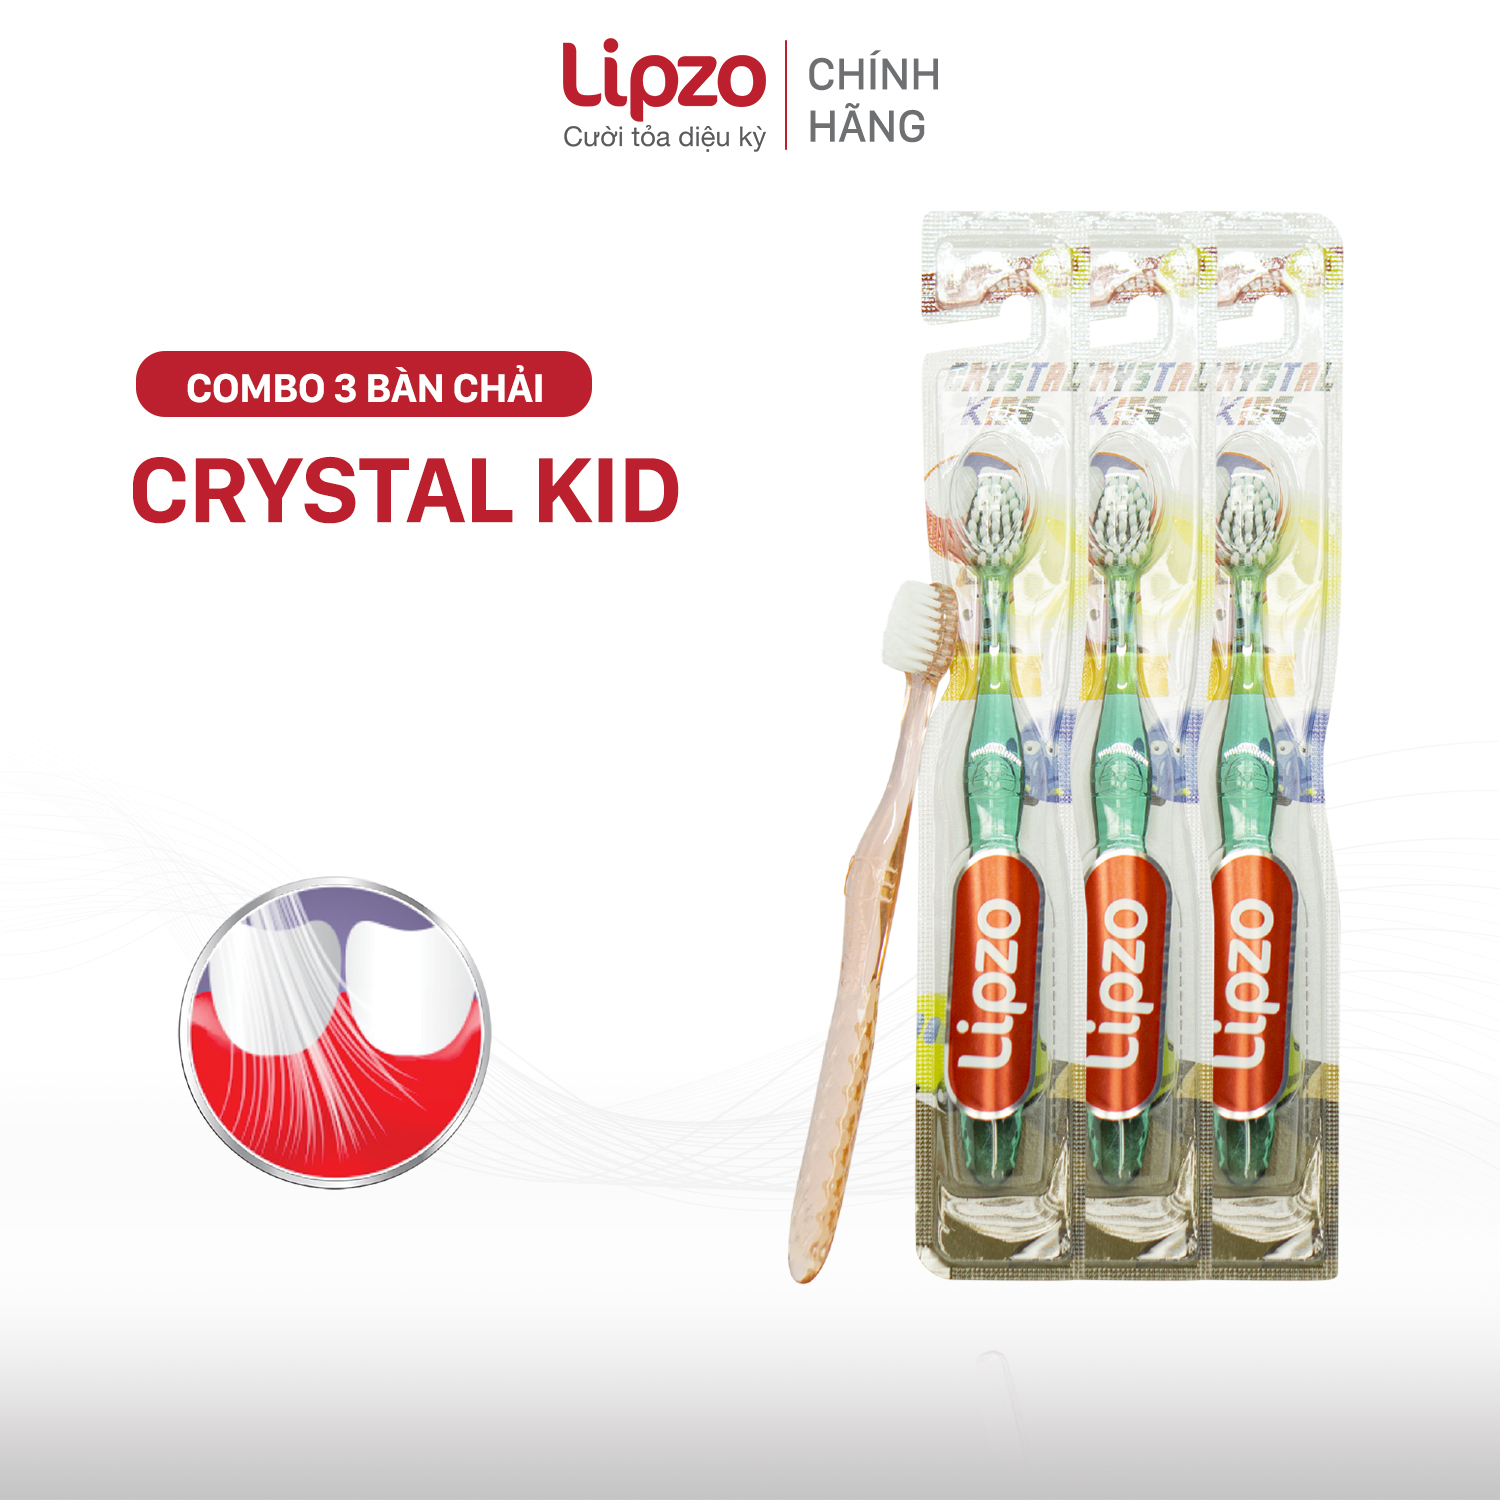 Combo 3 Bàn Chải Đánh Răng Lipzo Crystal Kids Lông Chỉ Tơ Nha Khoa Kháng